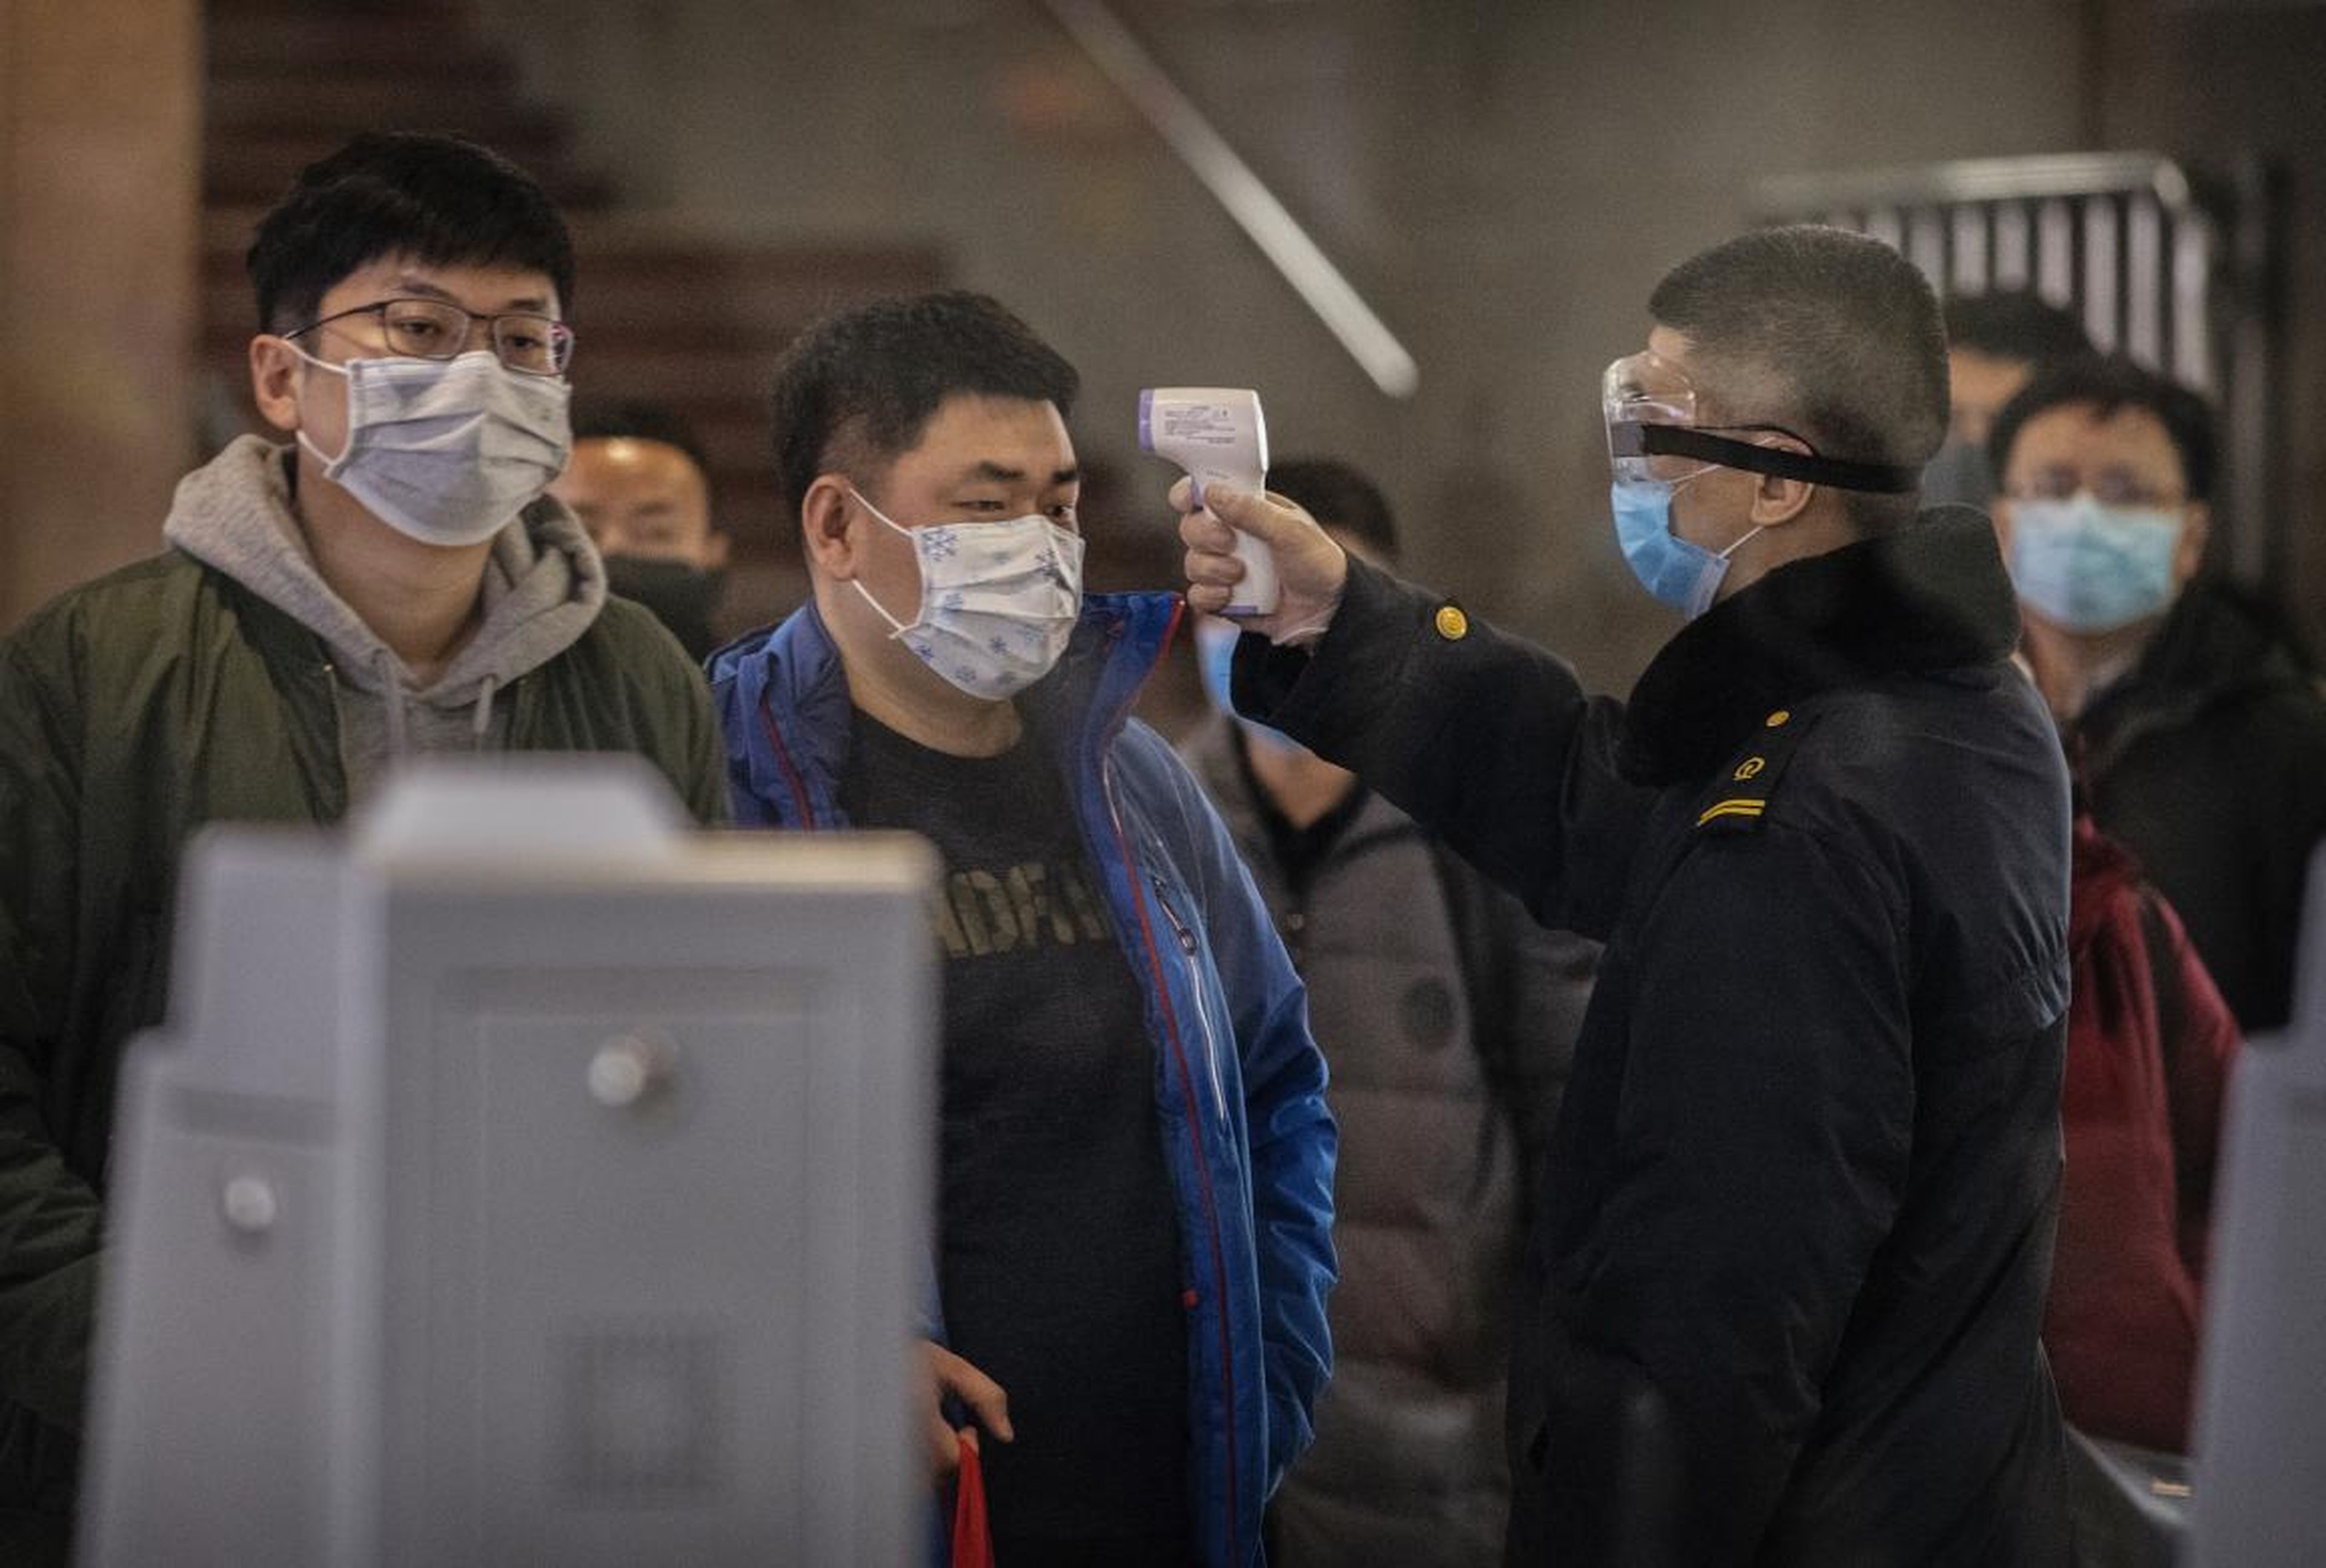 Pasajeros recién llegados en tren desde Wuhan son examinados en Pekín para detectar la presencia del coronavirus.